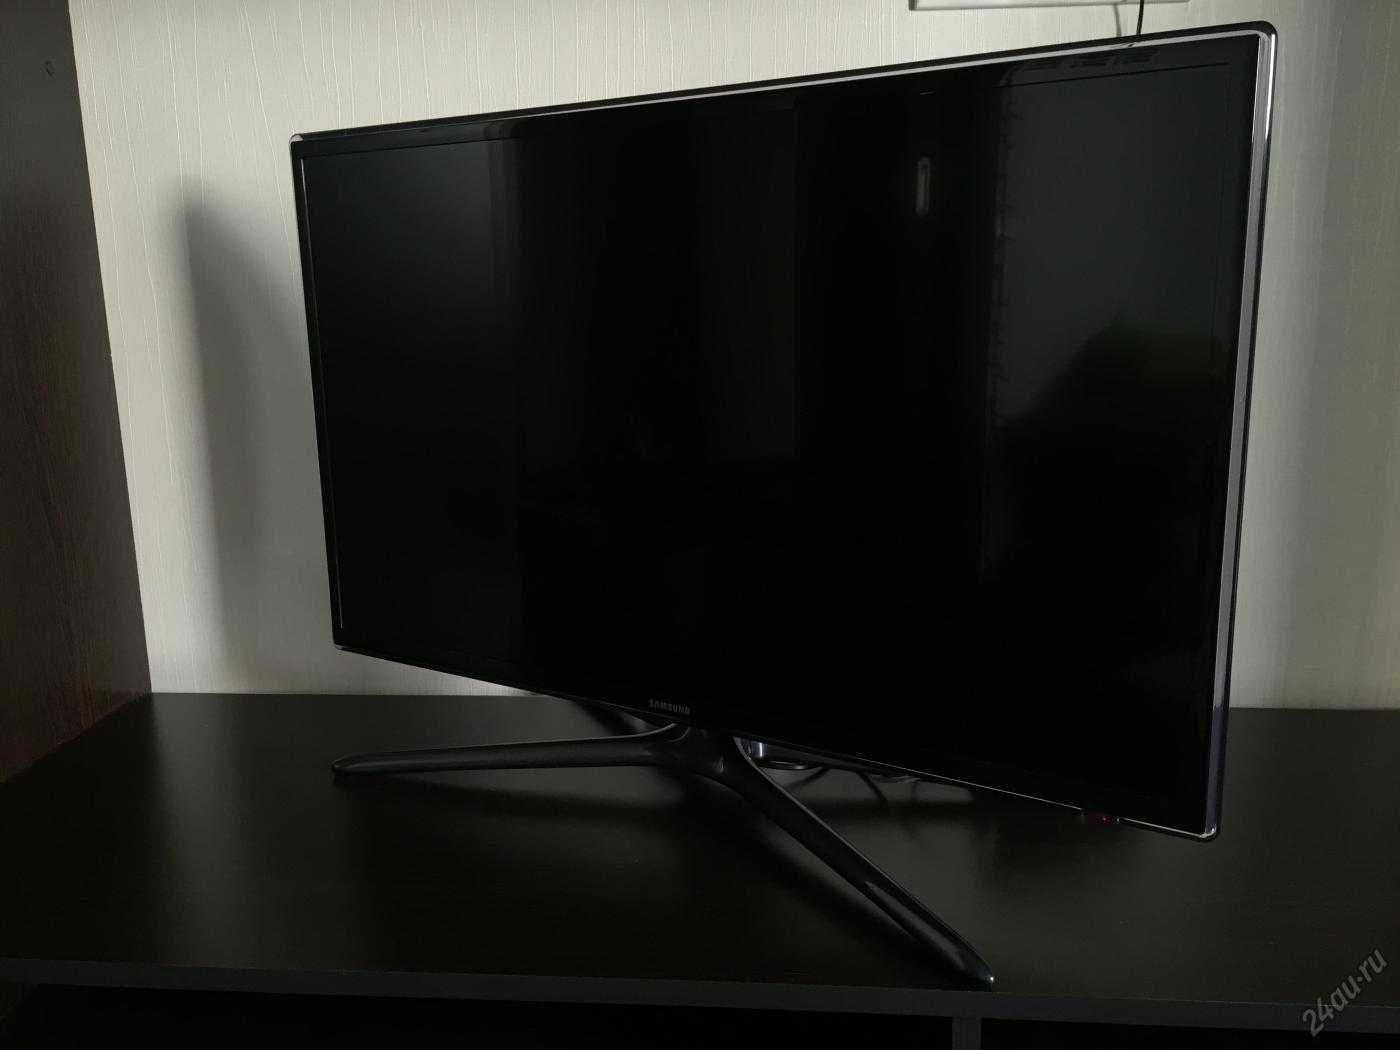 Samsung ue46f6100акx  (черный) - купить , скидки, цена, отзывы, обзор, характеристики - телевизоры